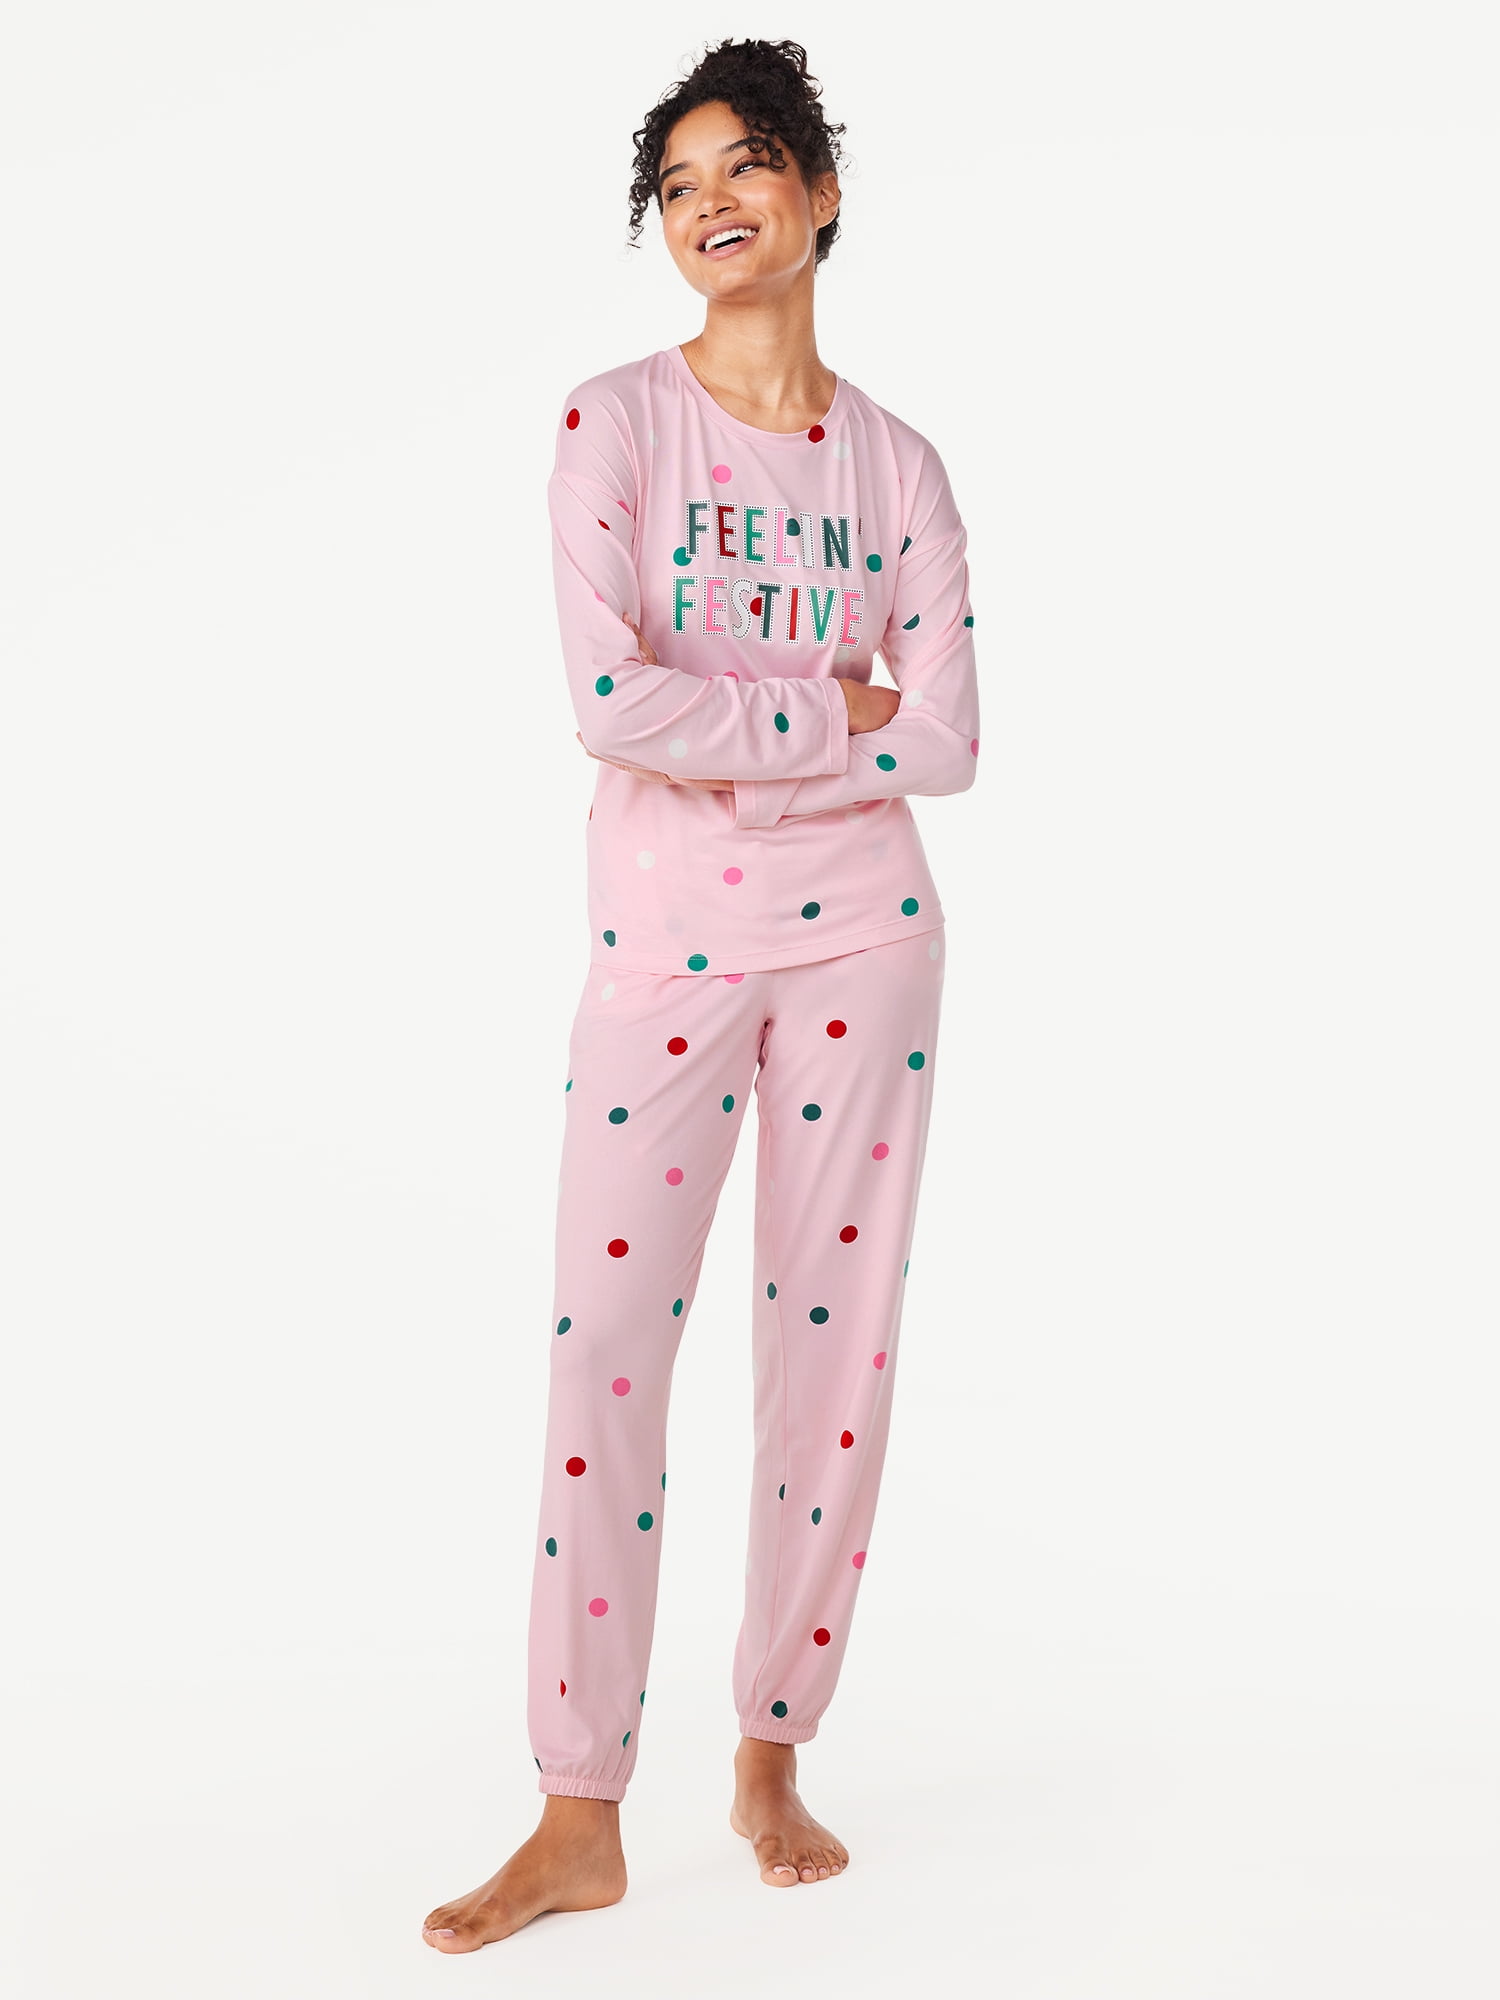 Joyspun Women’s Long Sleeve Tee and Joggers, 2-Piece Pajama Set, Sizes ...